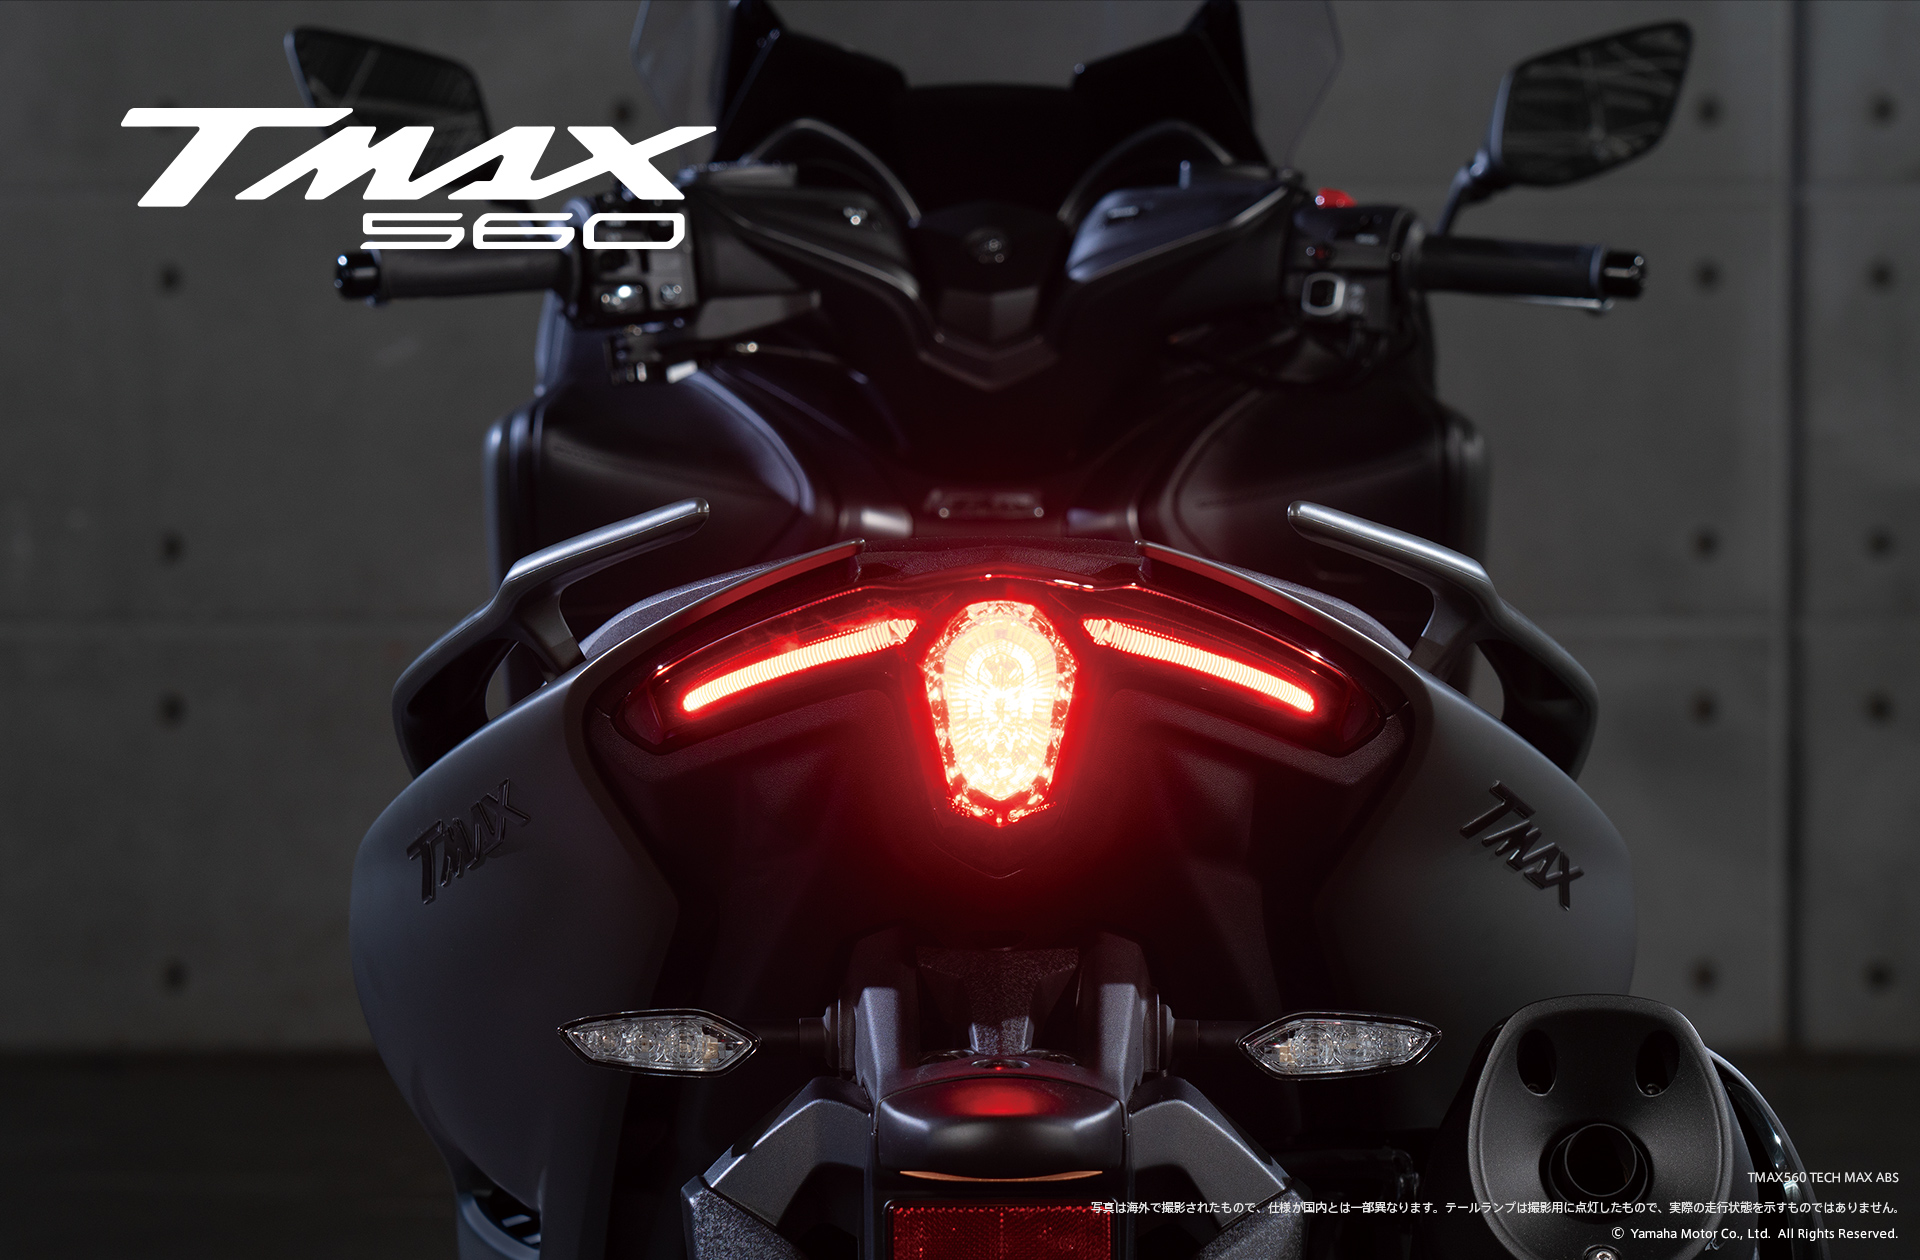 Xe tay ga siêu đắt Yamaha Tmax 560 2020 ra mắt, mở bán từ ngày 8/5 tới